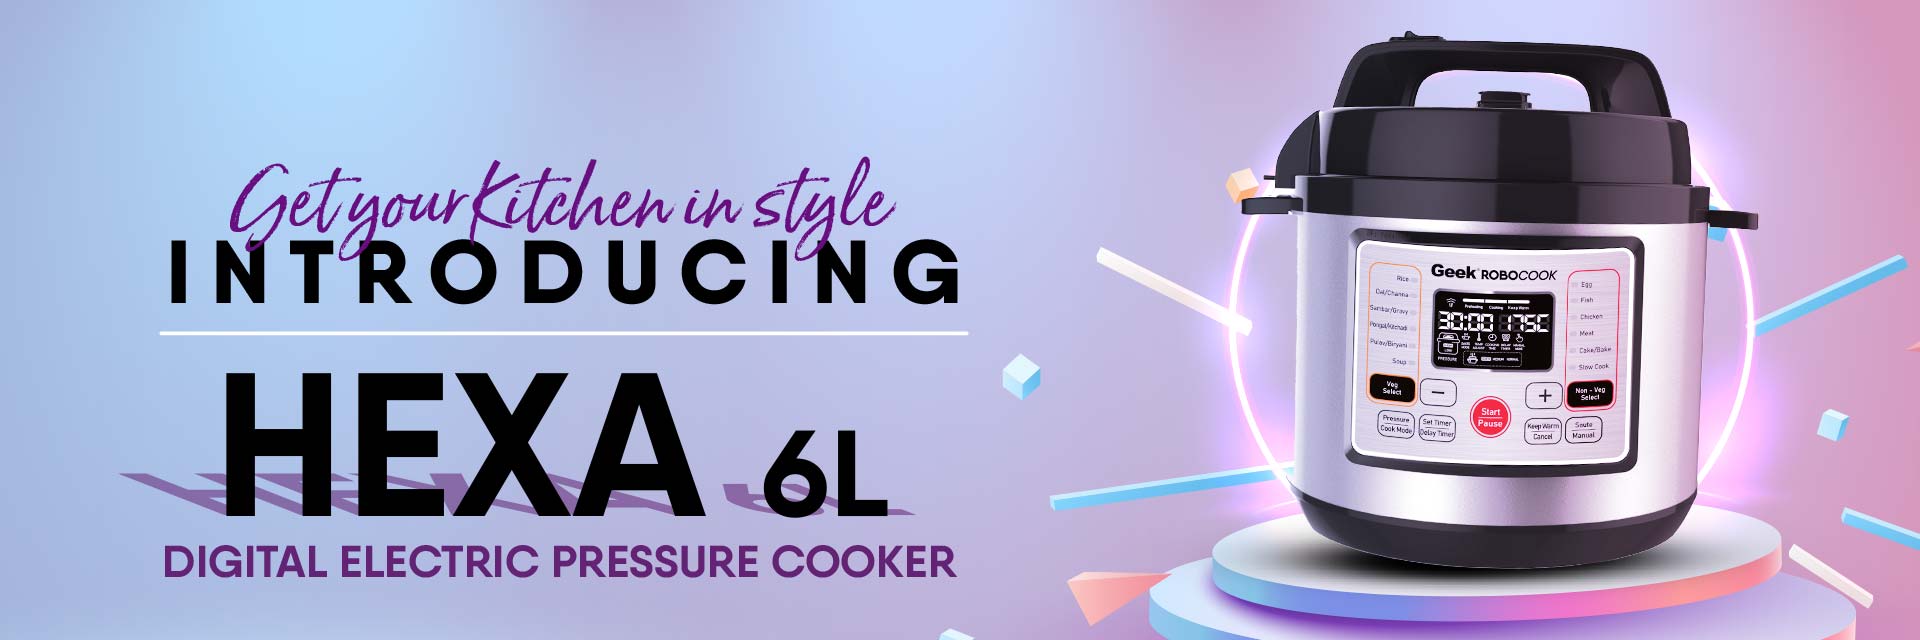 Geek Chef 6 Qt 17-in-1 Multi-Use Electric Pressure Cooker